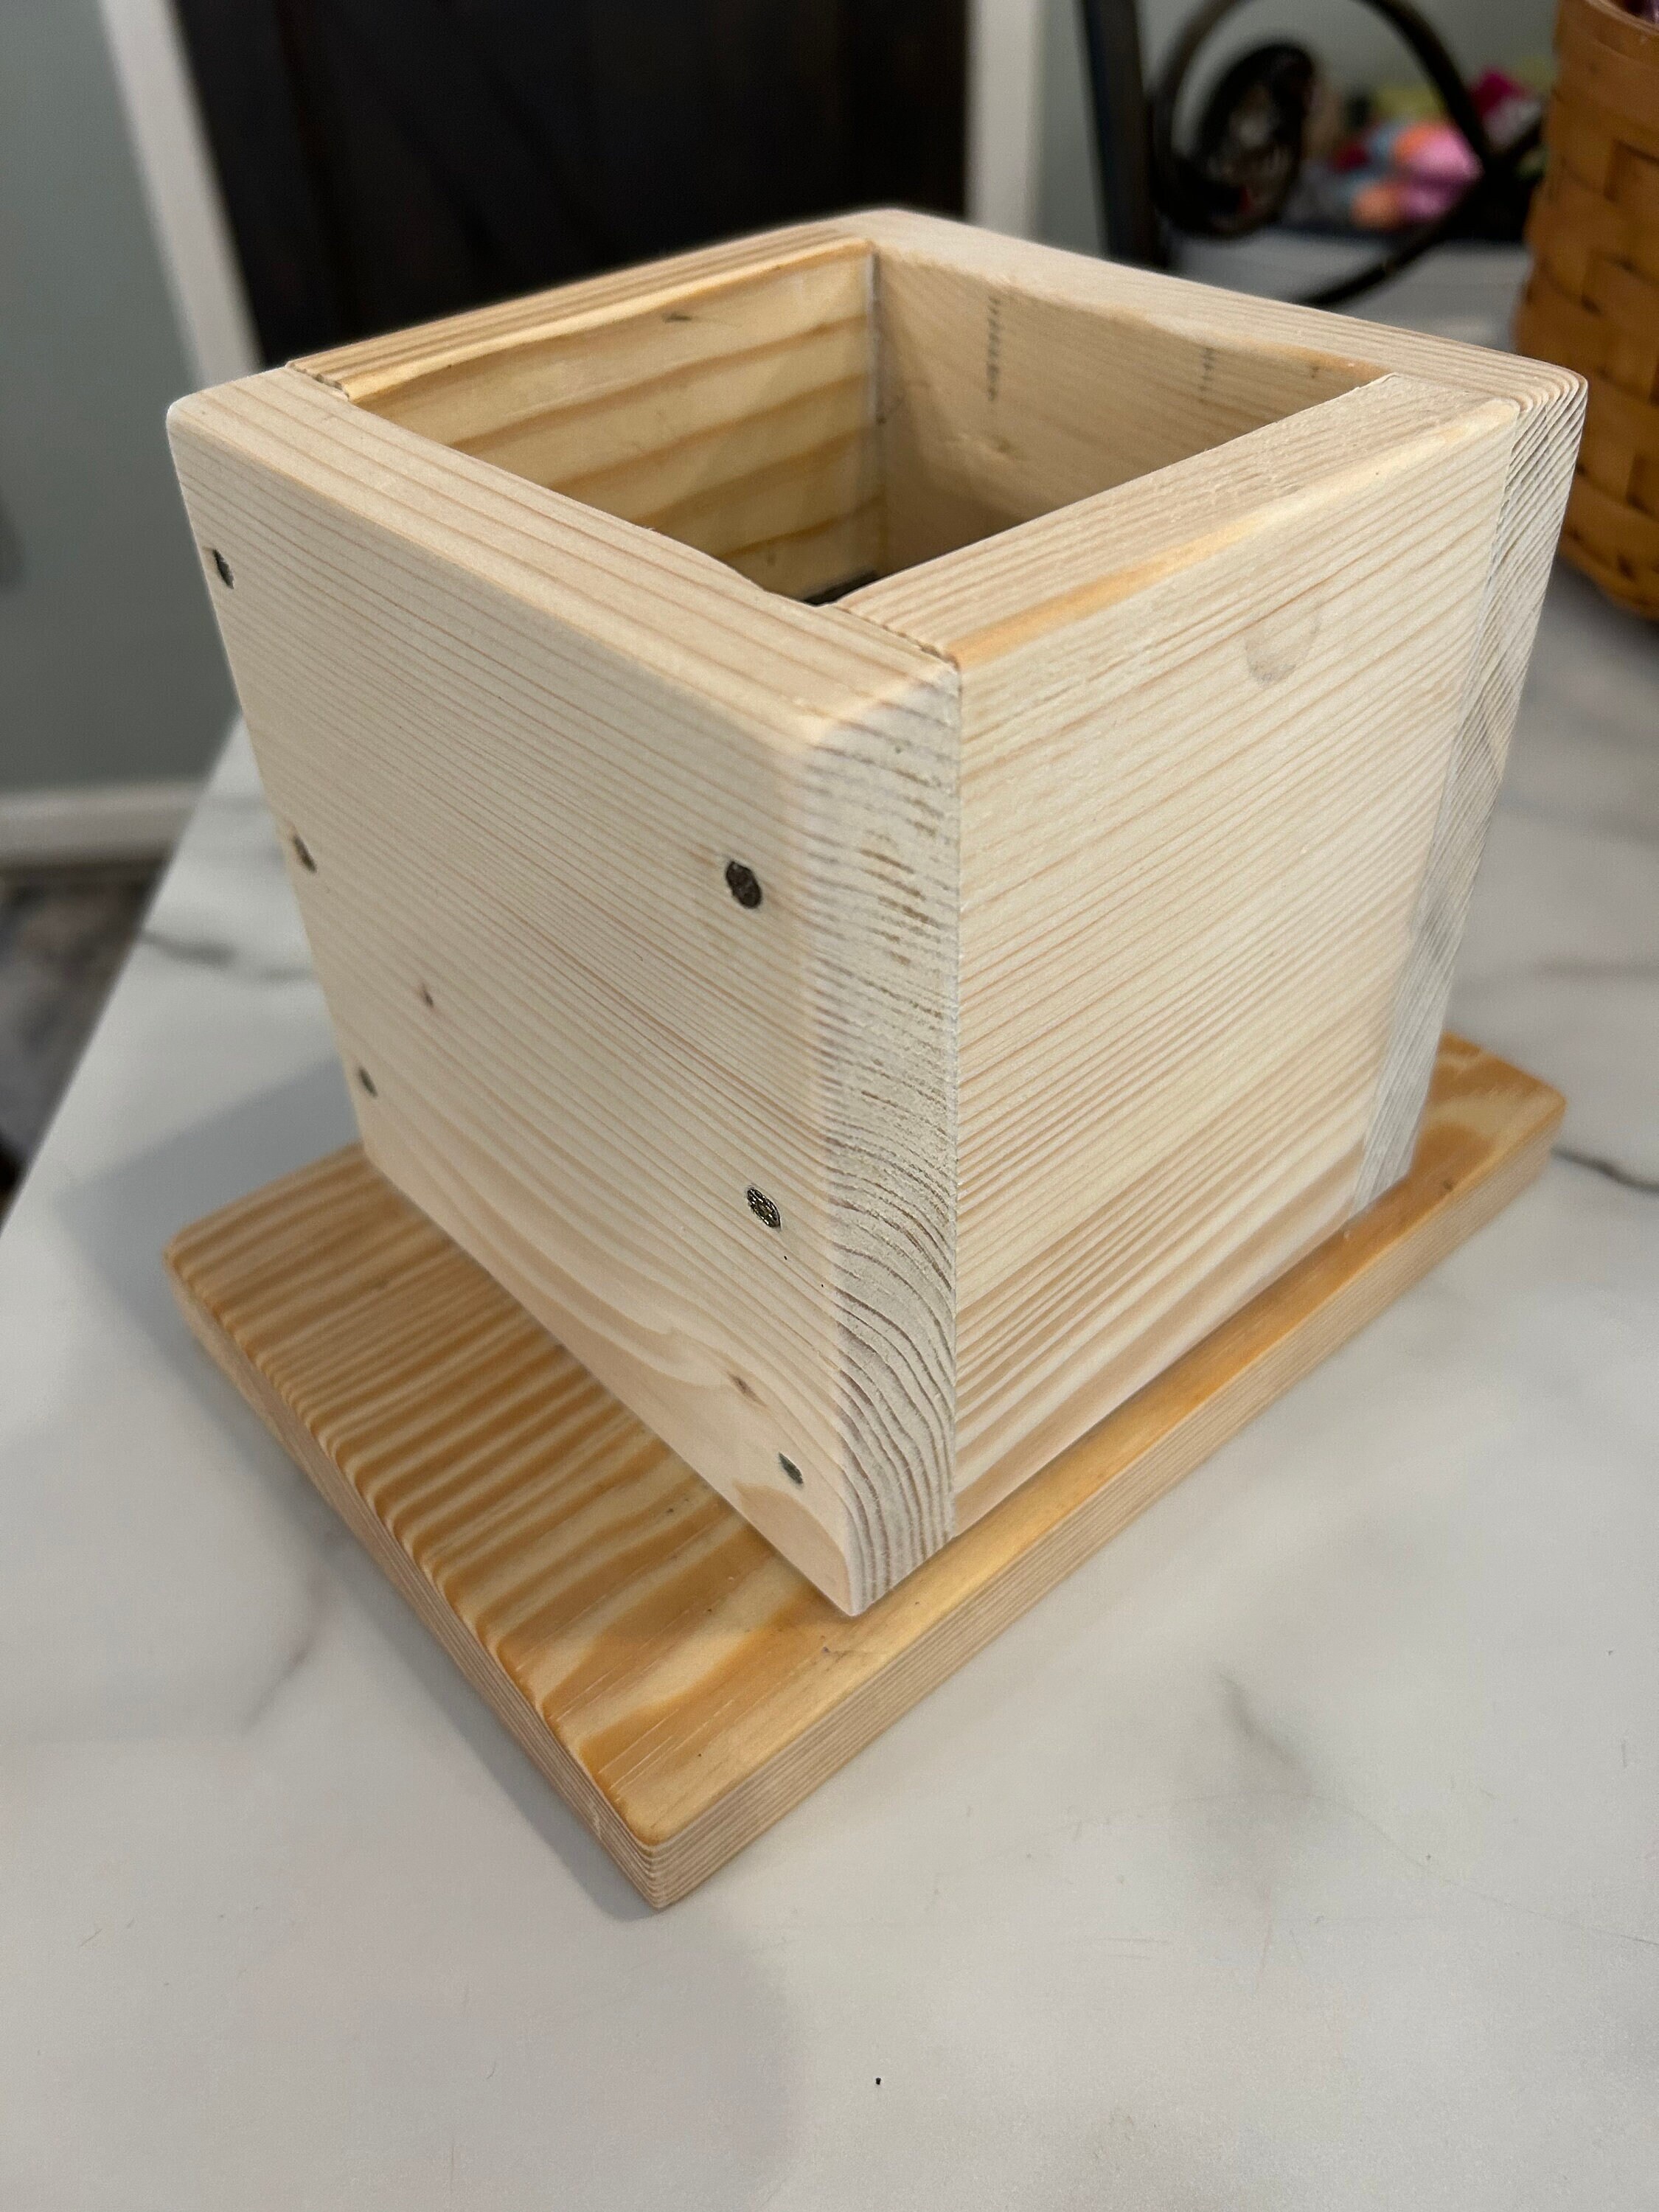 Woodburning DIY Craft Kit 